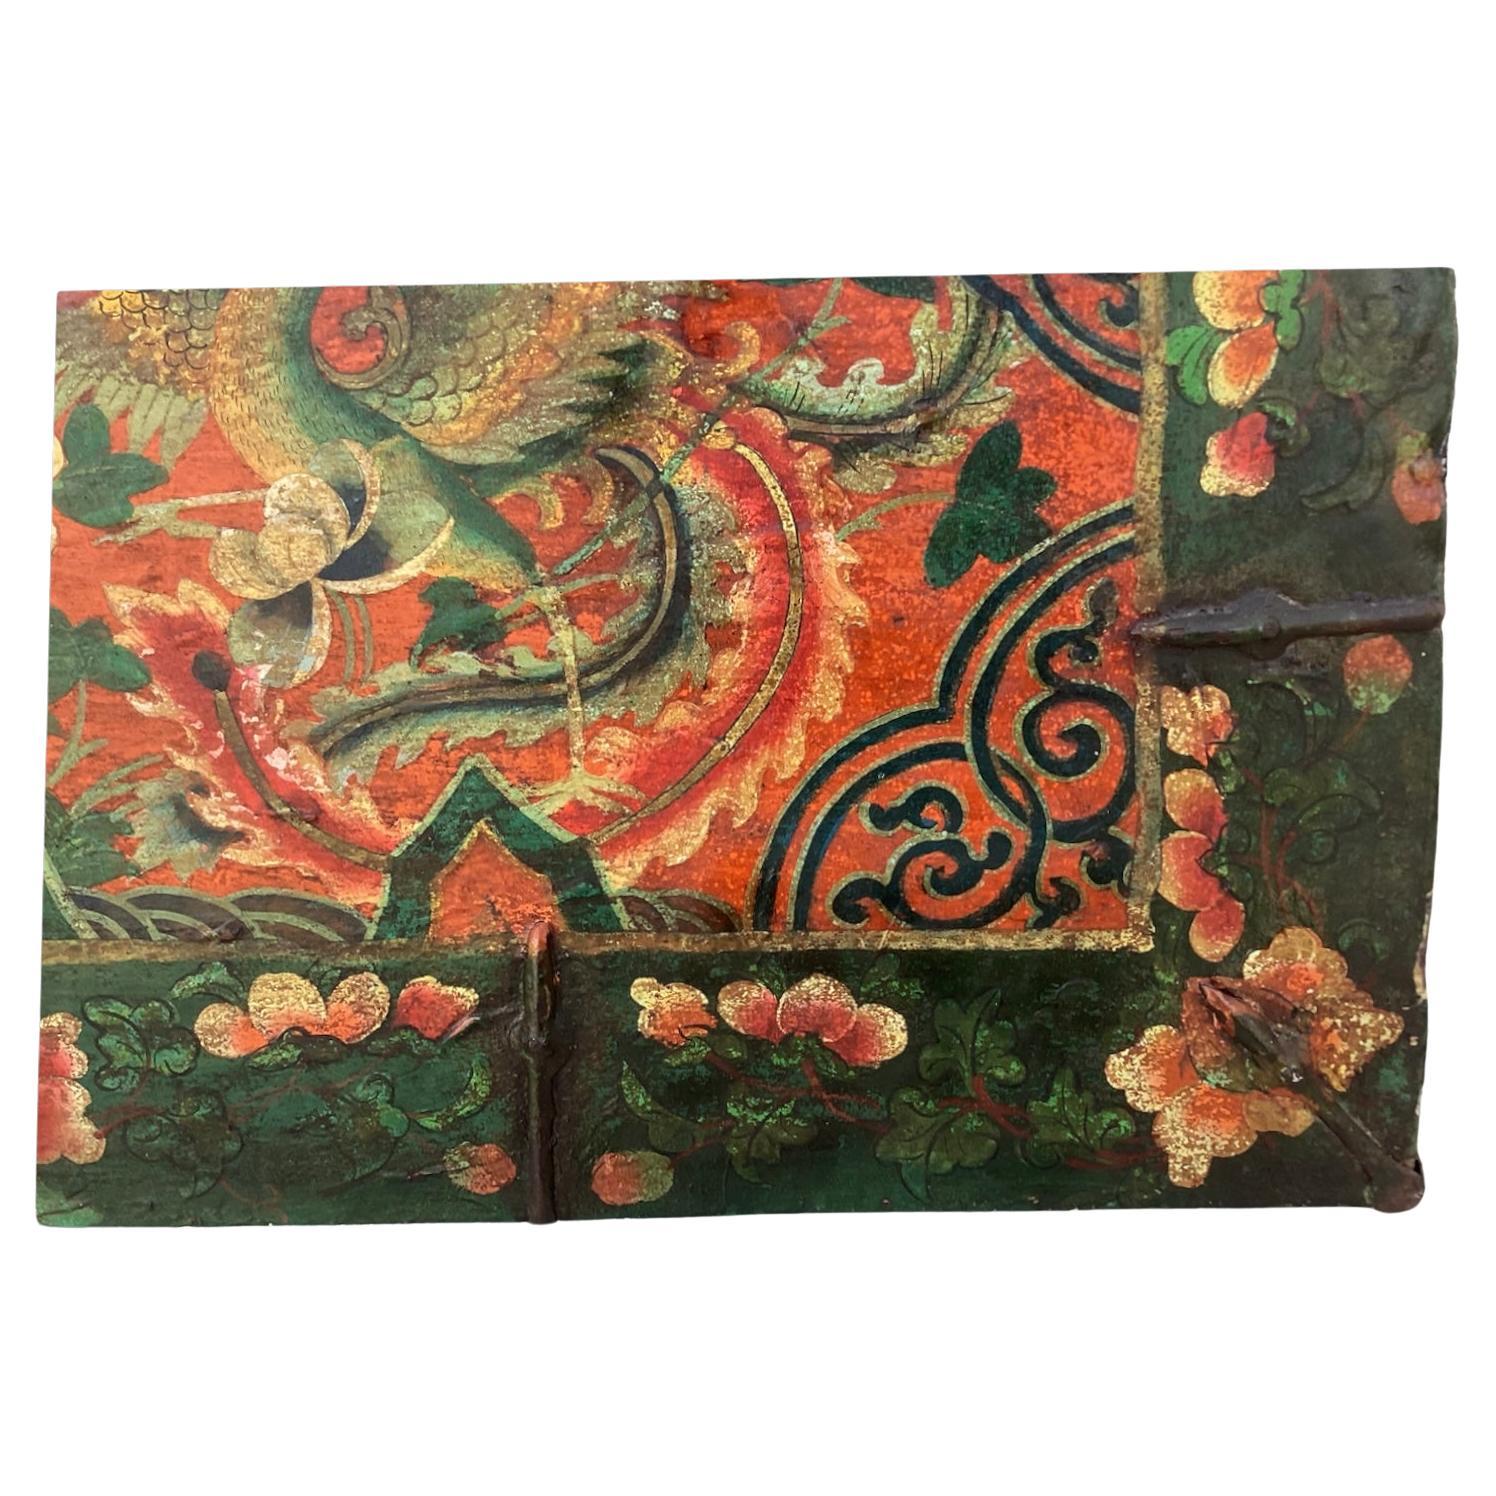 Antike tibetische Truhe, schön gealtertes bemaltes Leder mit originalen Eisenbeschlägen. Die Truhe hat einen geräumigen Innenraum aus Holz, der viel Stauraum bietet. Außen sind mehrfarbig bemalte Drachen und asiatische Blumen in roten, grünen und